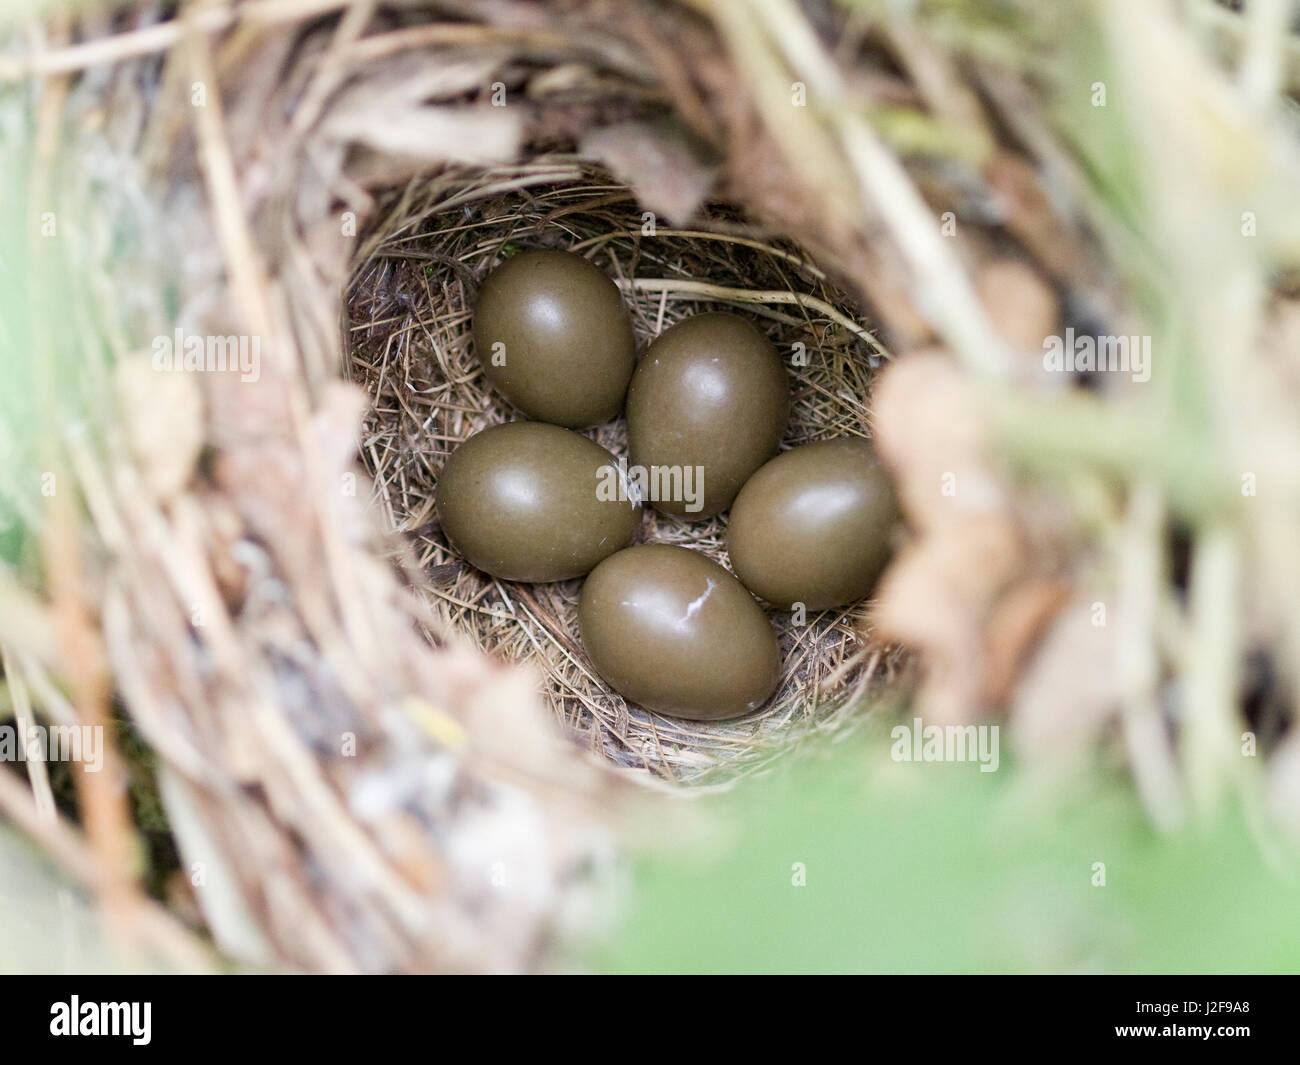 Nid d'une politique commune de Nightingale (Luscinia megarhynchos) avec cinq œufs Banque D'Images